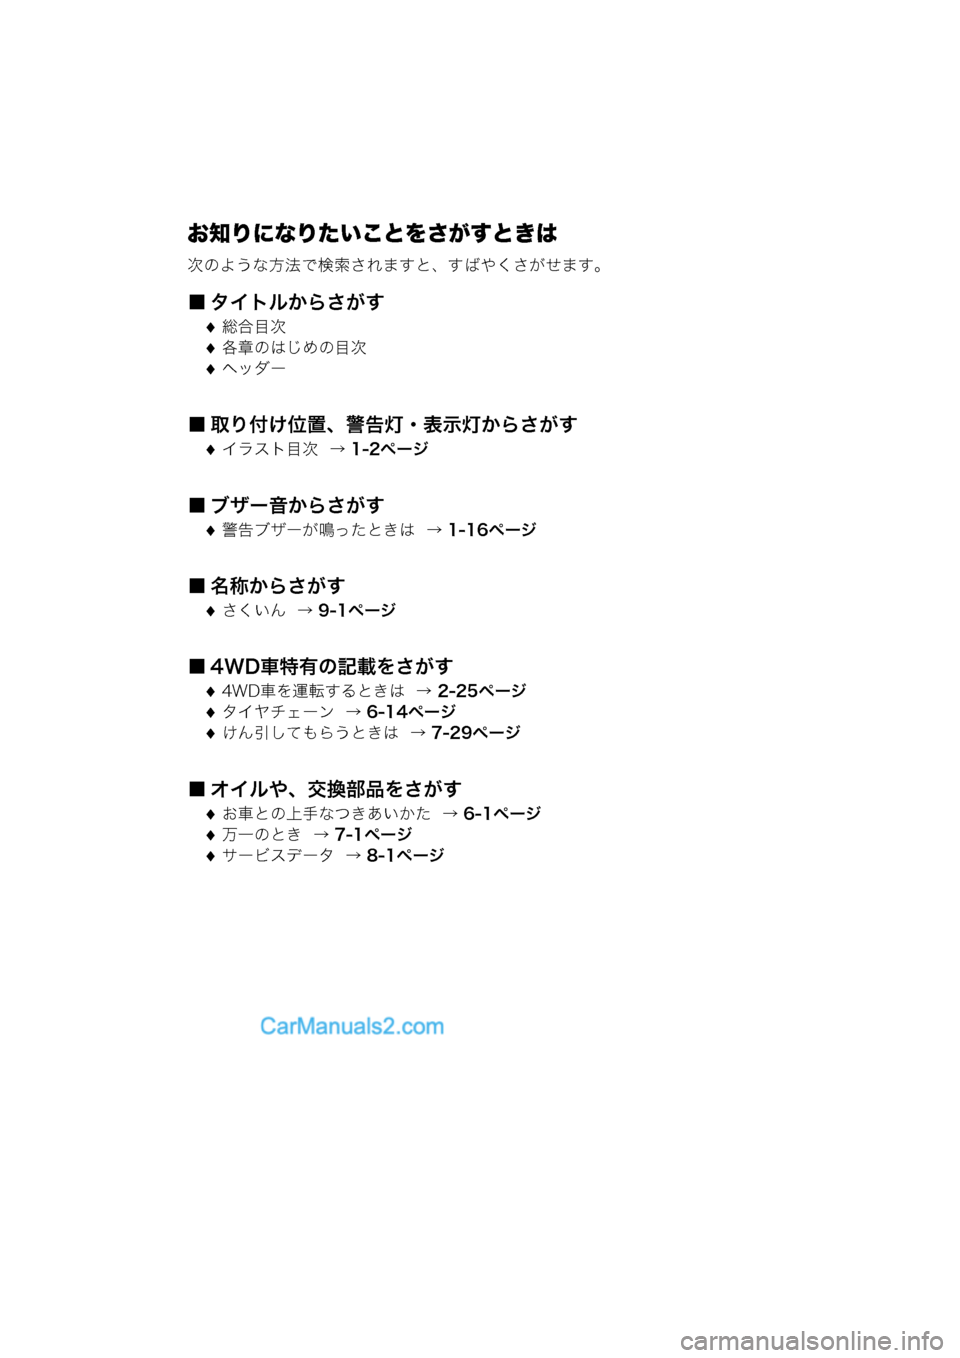 MAZDA MODEL CARROL 2013  取扱説明書 (キャロル) (in Japanese) お知りになりたいことをさがすときは
次のような方法で検索されますと、すばやくさがせます。
■ タイトルからさがす
総合目次
各章のはじめ